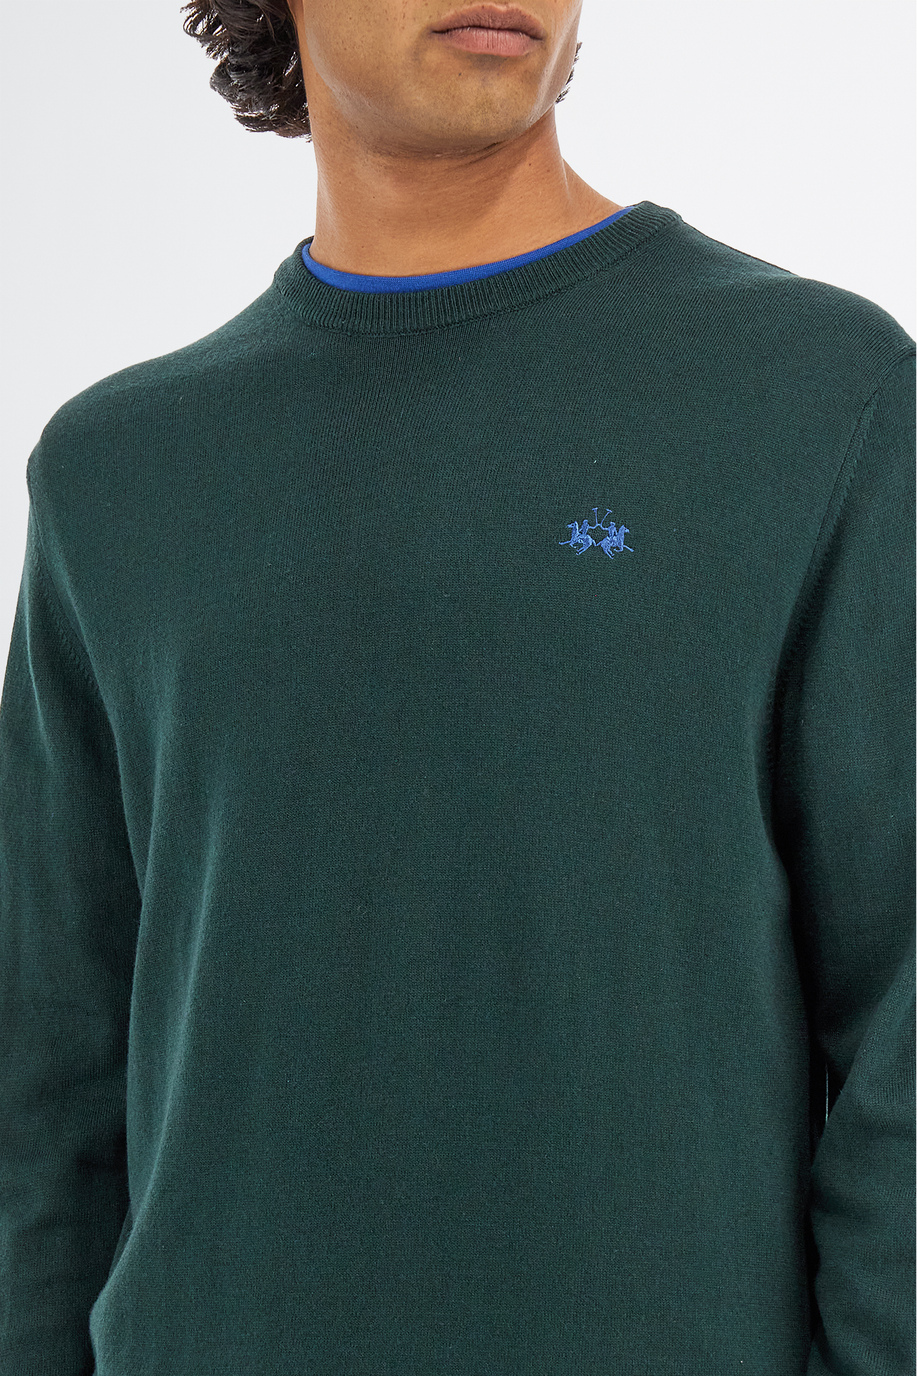 Maglia tricot da uomo a maniche lunghe in cotone misto lana regular fit - Maglie | La Martina - Official Online Shop